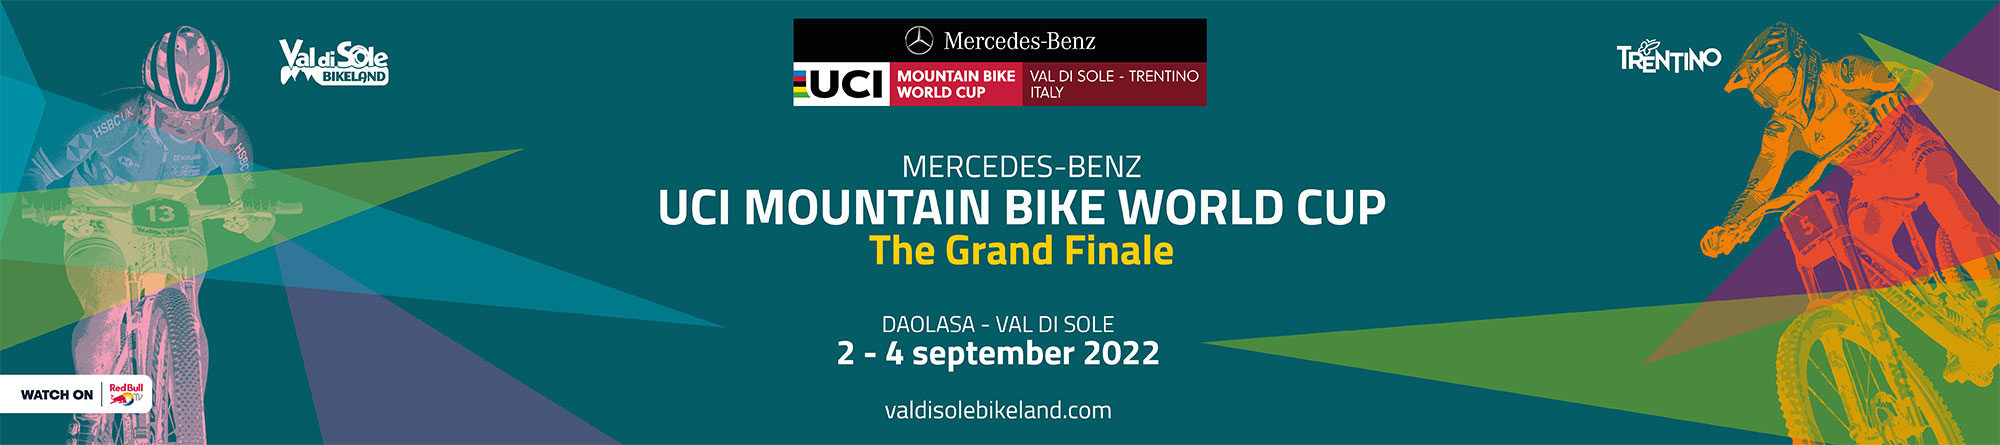 Coppa del Mondo UCI MTB - Le Finali